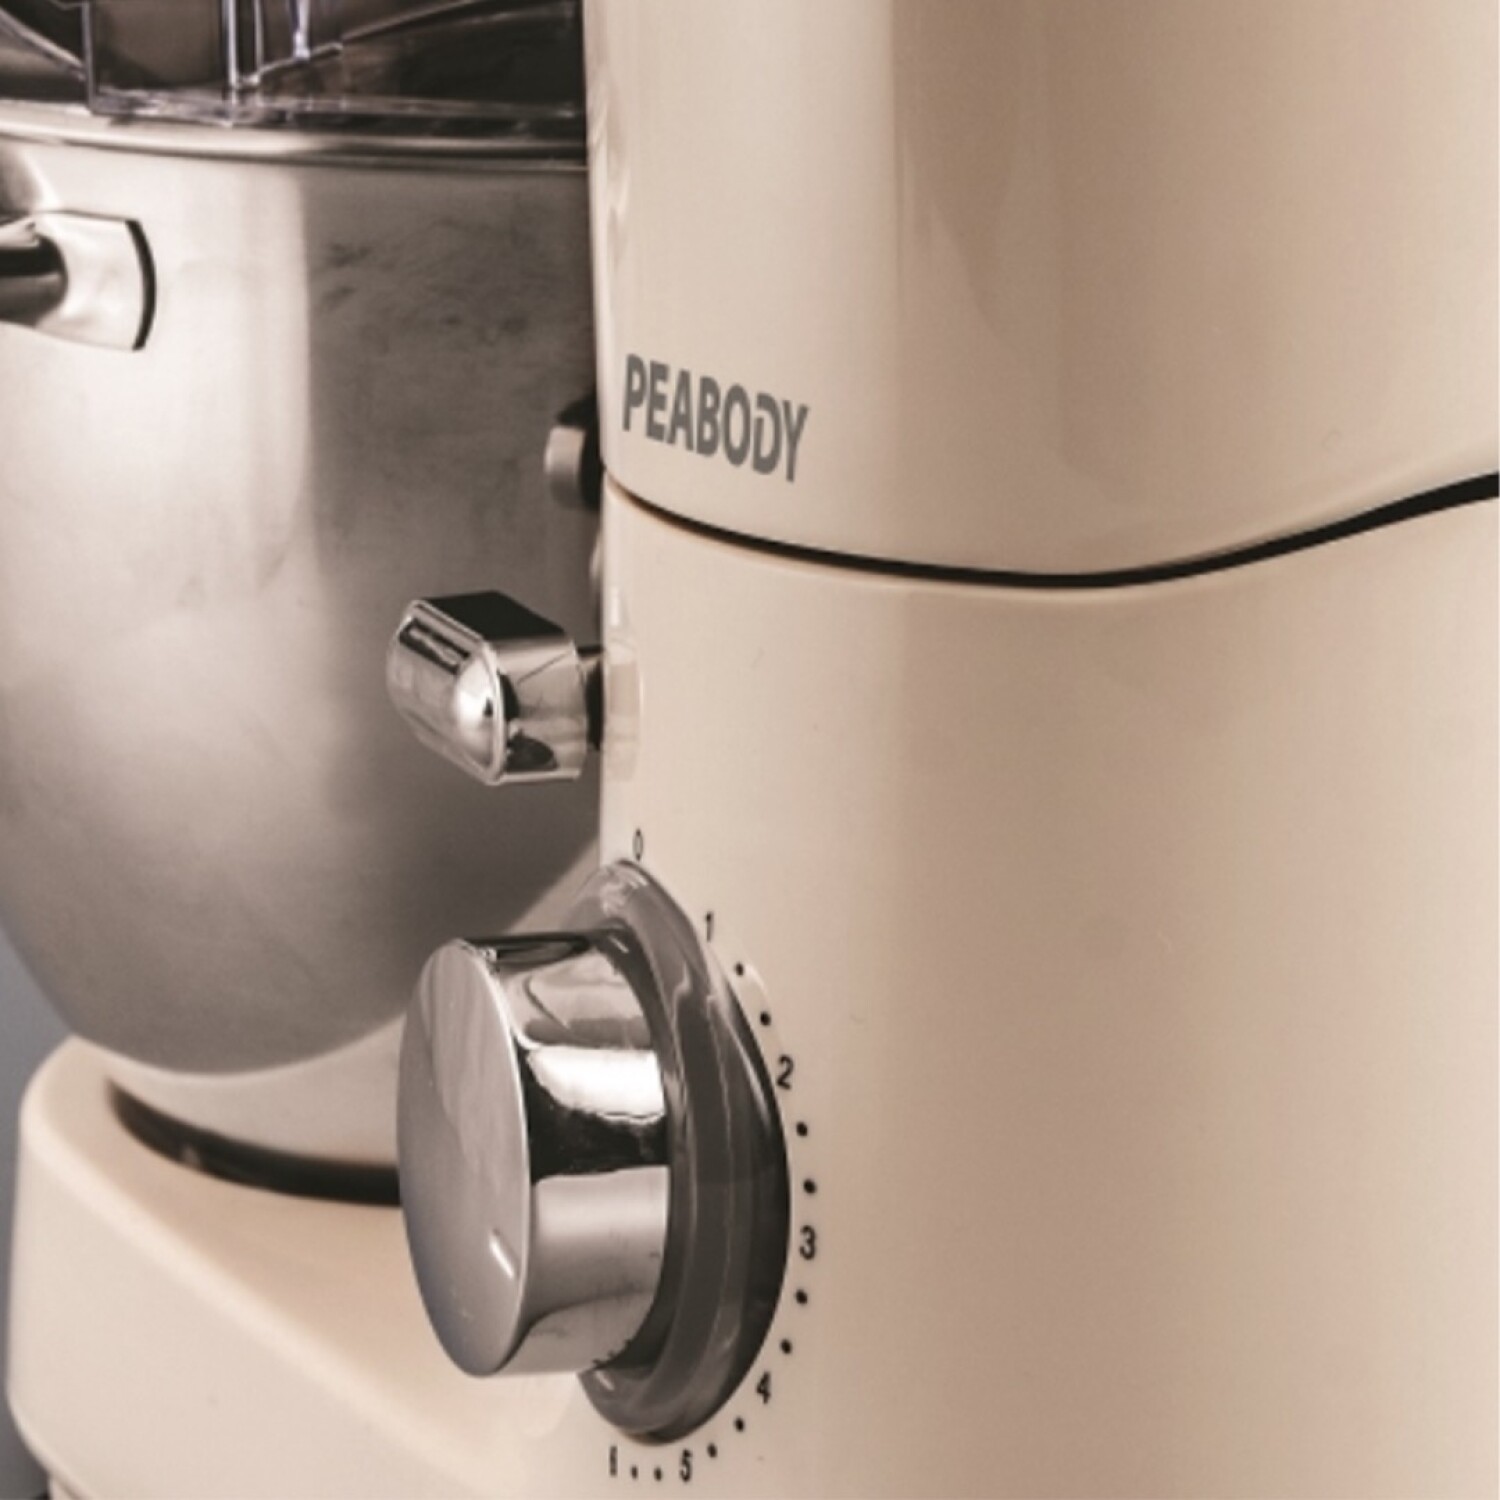 Robot de Cocina Batidora Bosch Mum 1000W + Accesorios - 001 — Universo  Binario